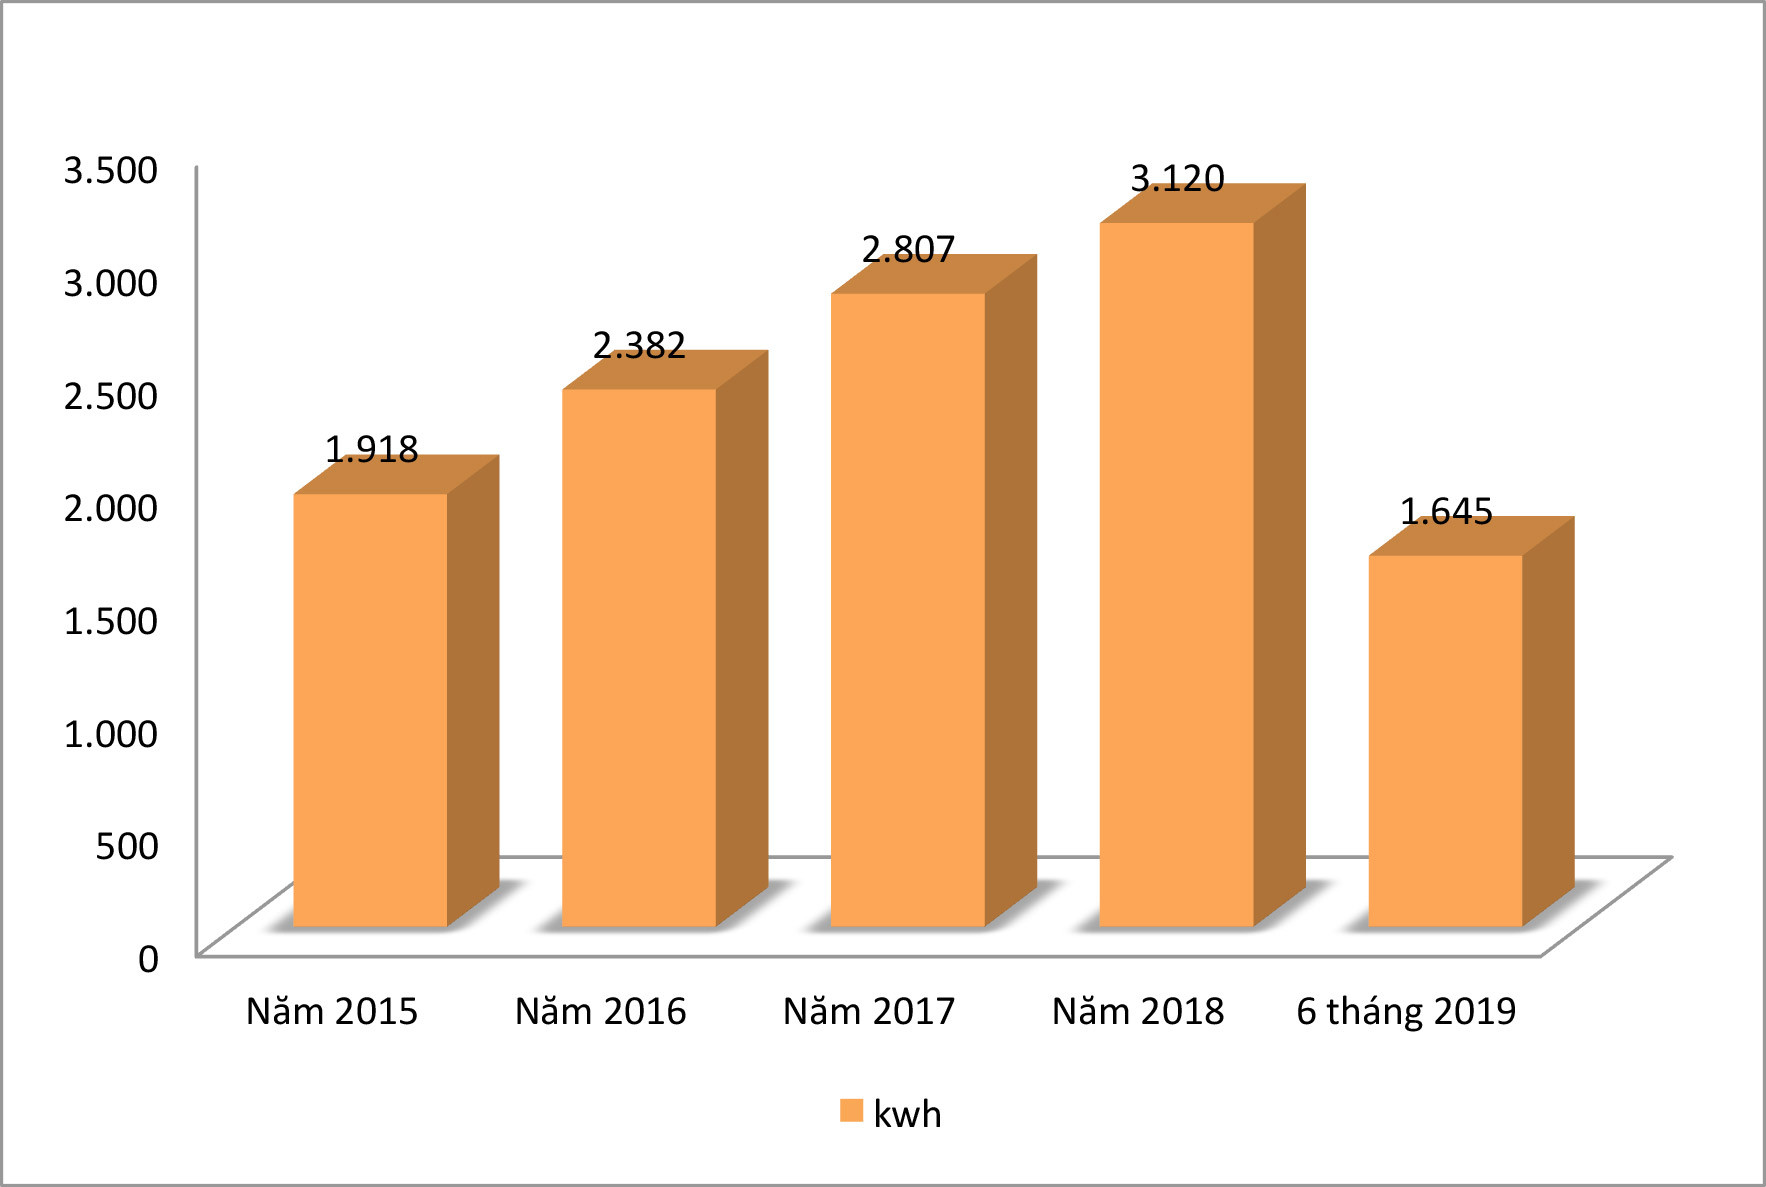 Sản lượng điện tiêu thụ trên địa bàn Nghệ An qua các năm. Đồ họa: Thu Huyền